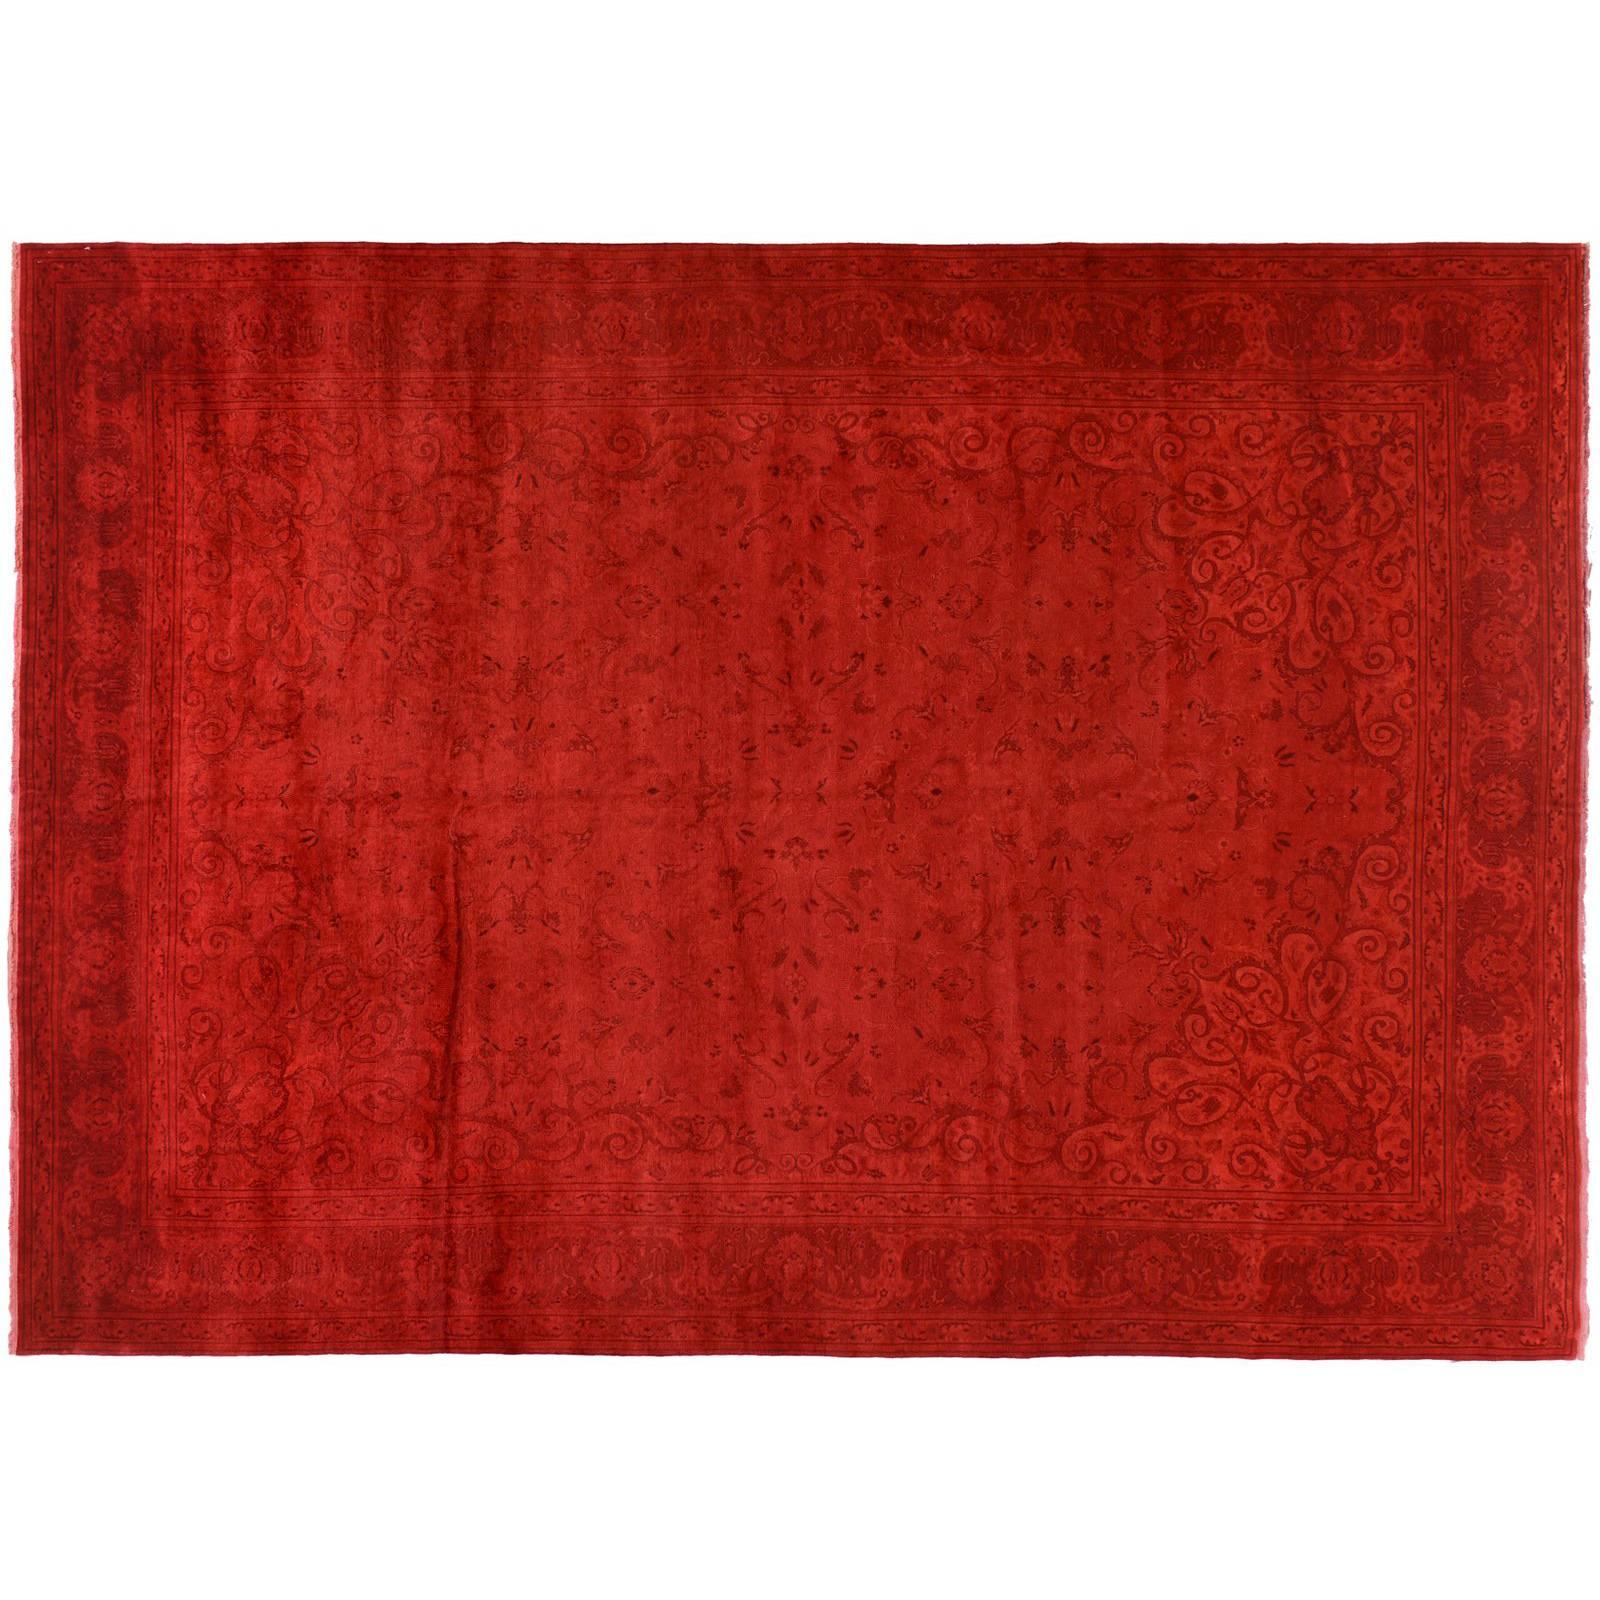 Seidige Wolle gefärbt Teppich in Rot